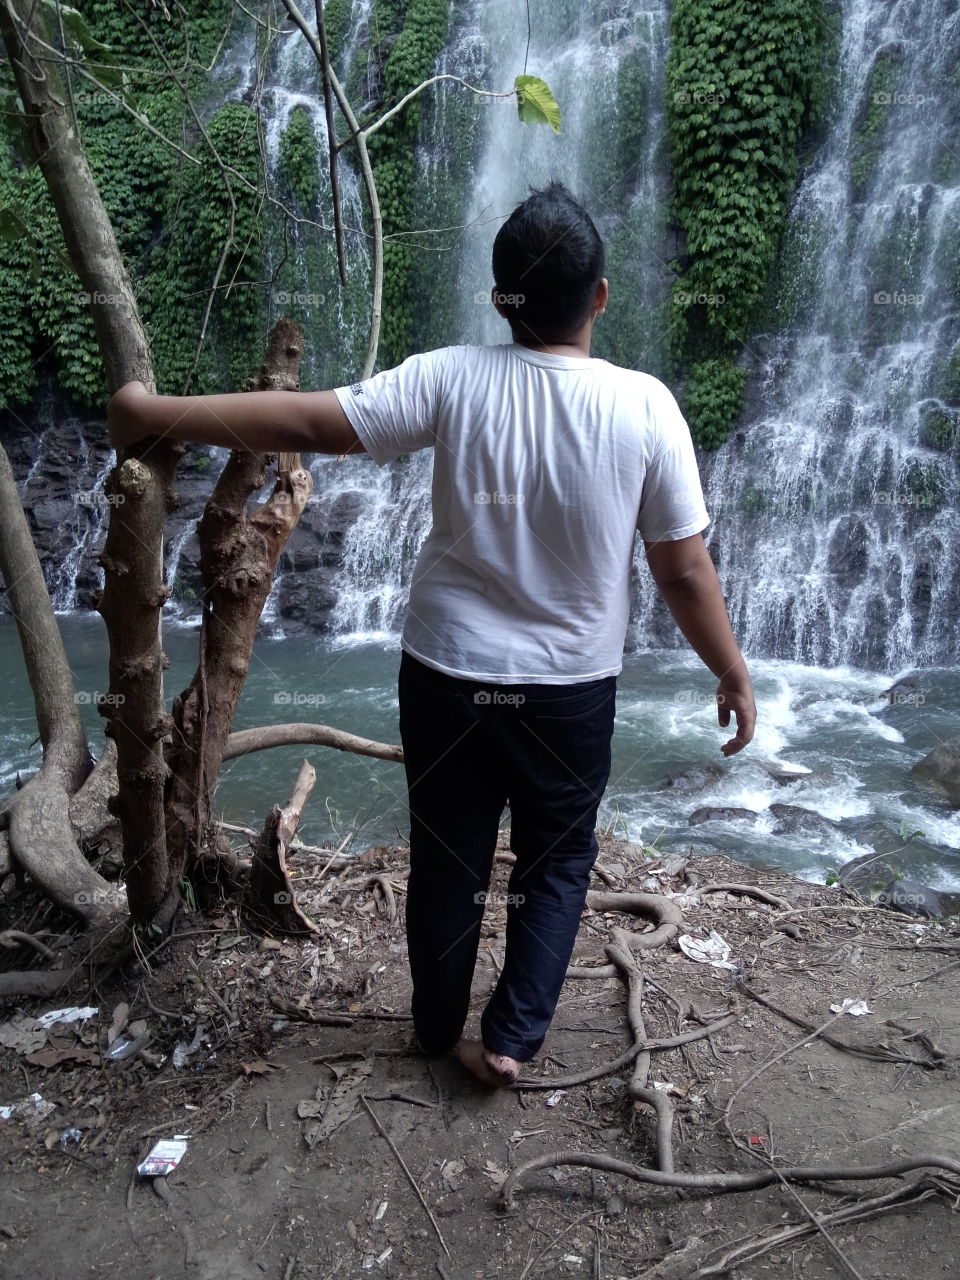 Waterfall advanture